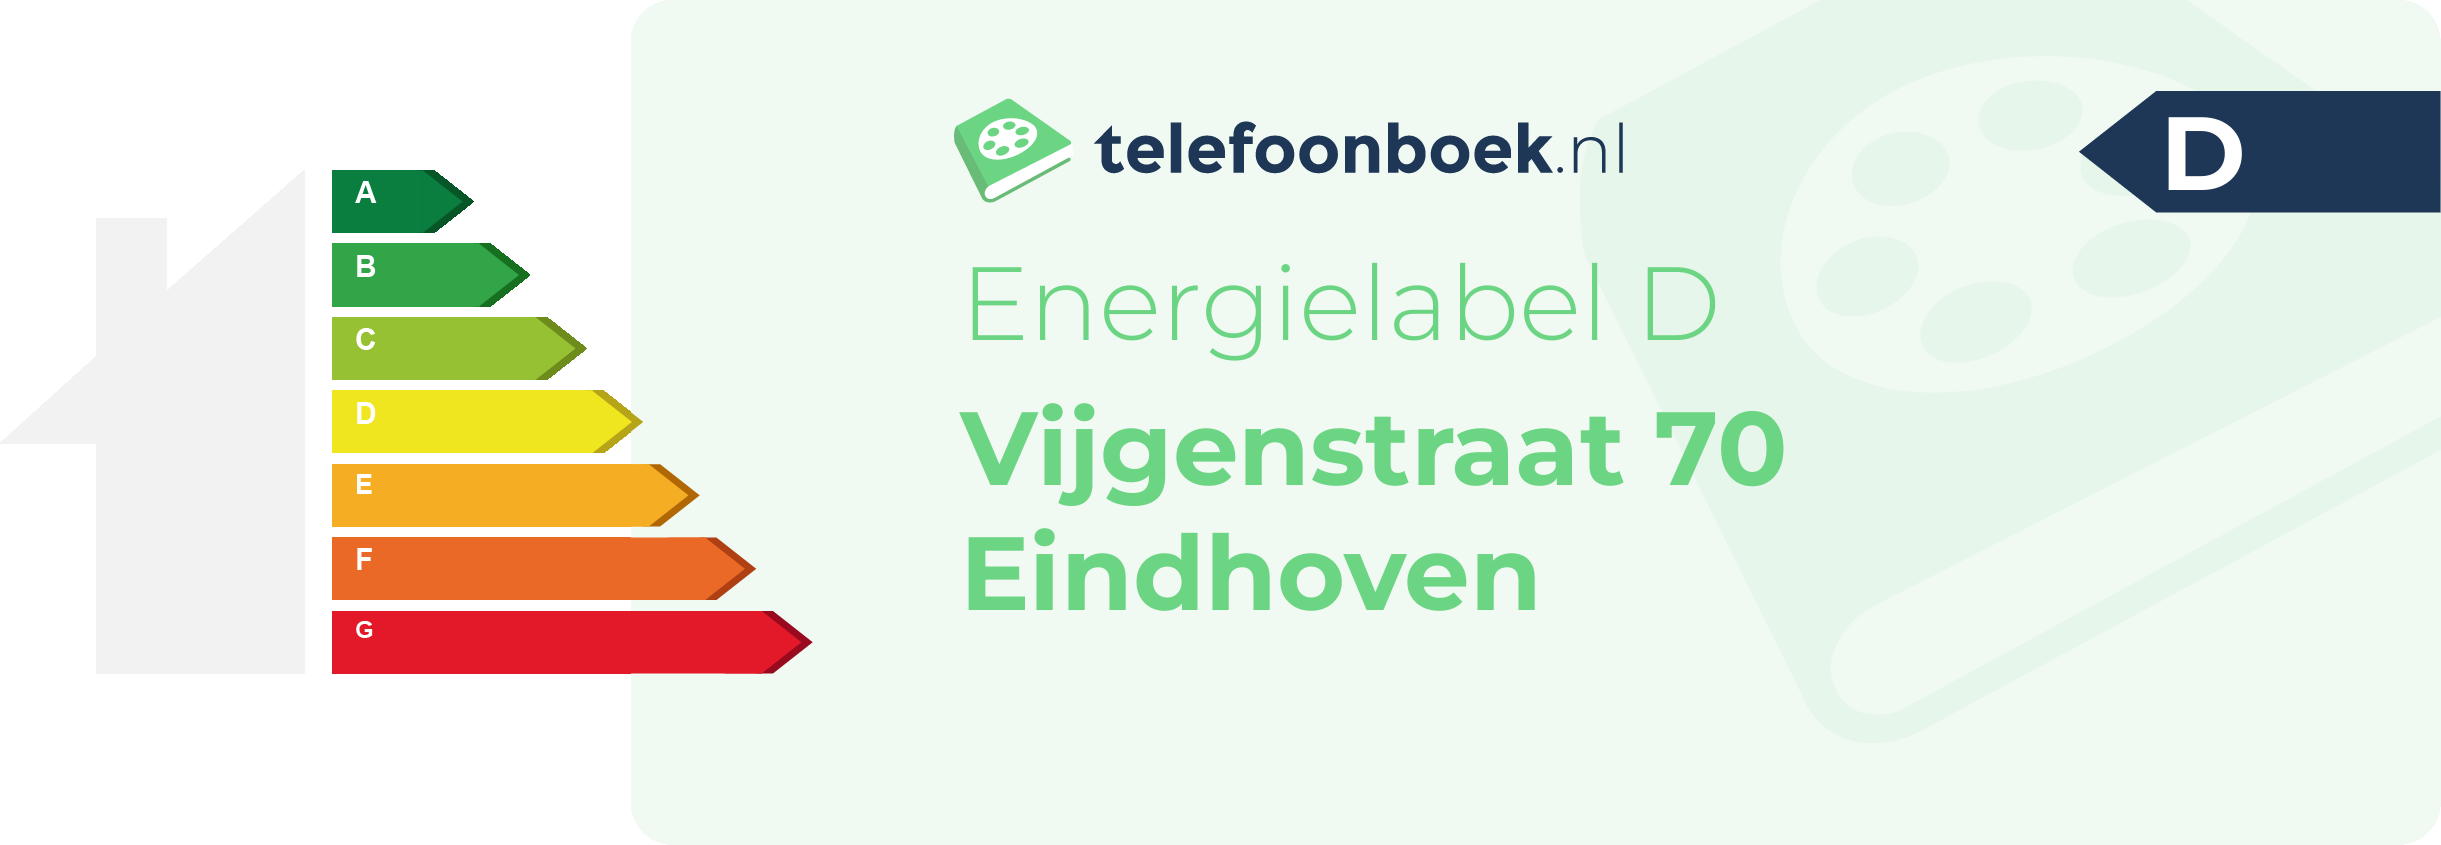 Energielabel Vijgenstraat 70 Eindhoven